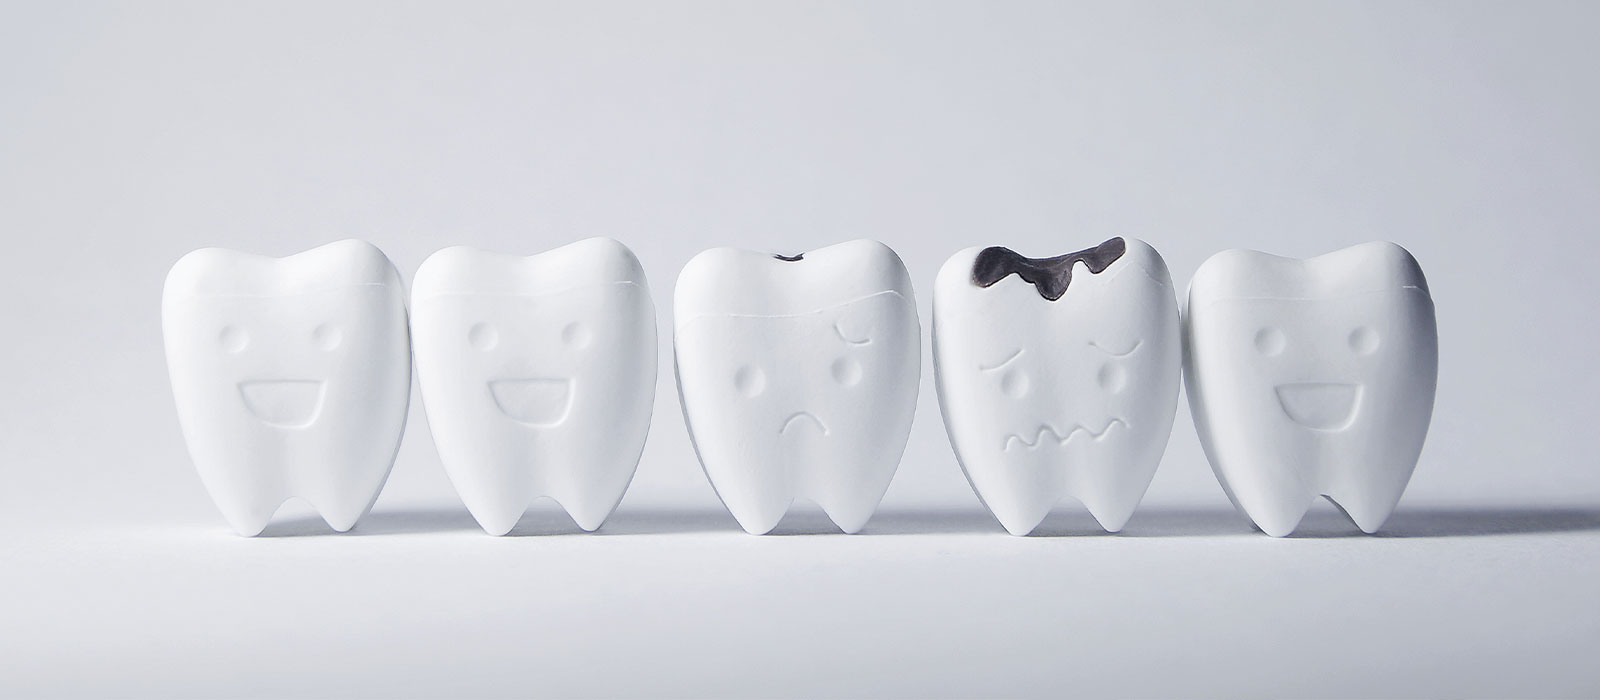 虫歯の症状段階・治療法について